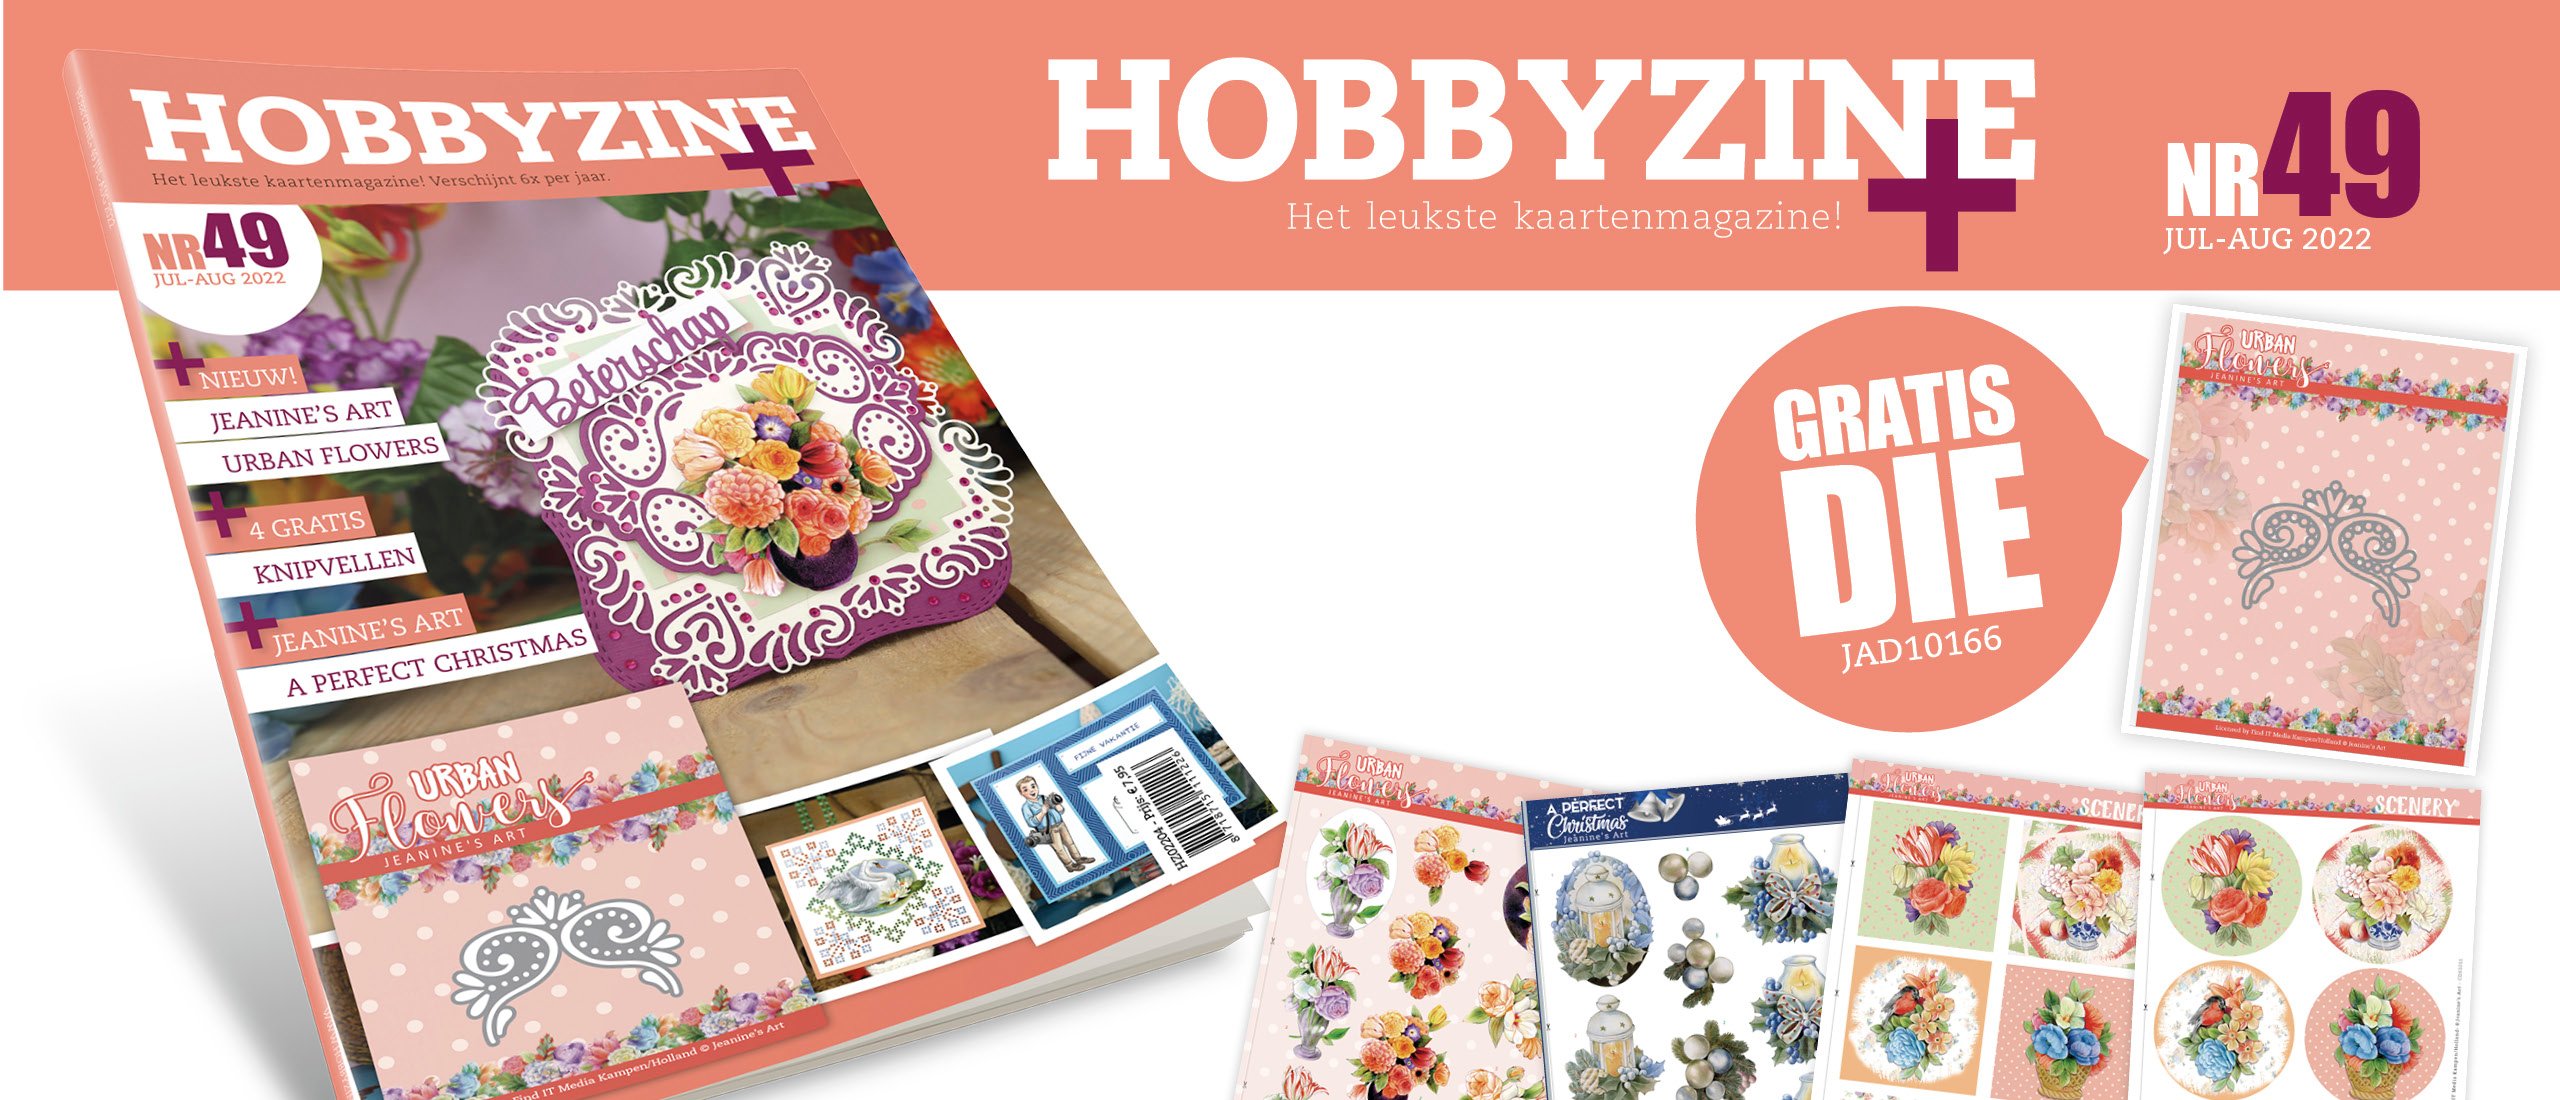 Gratis extra's bij Hobbyzine 49: goody, knipvellen en scenery